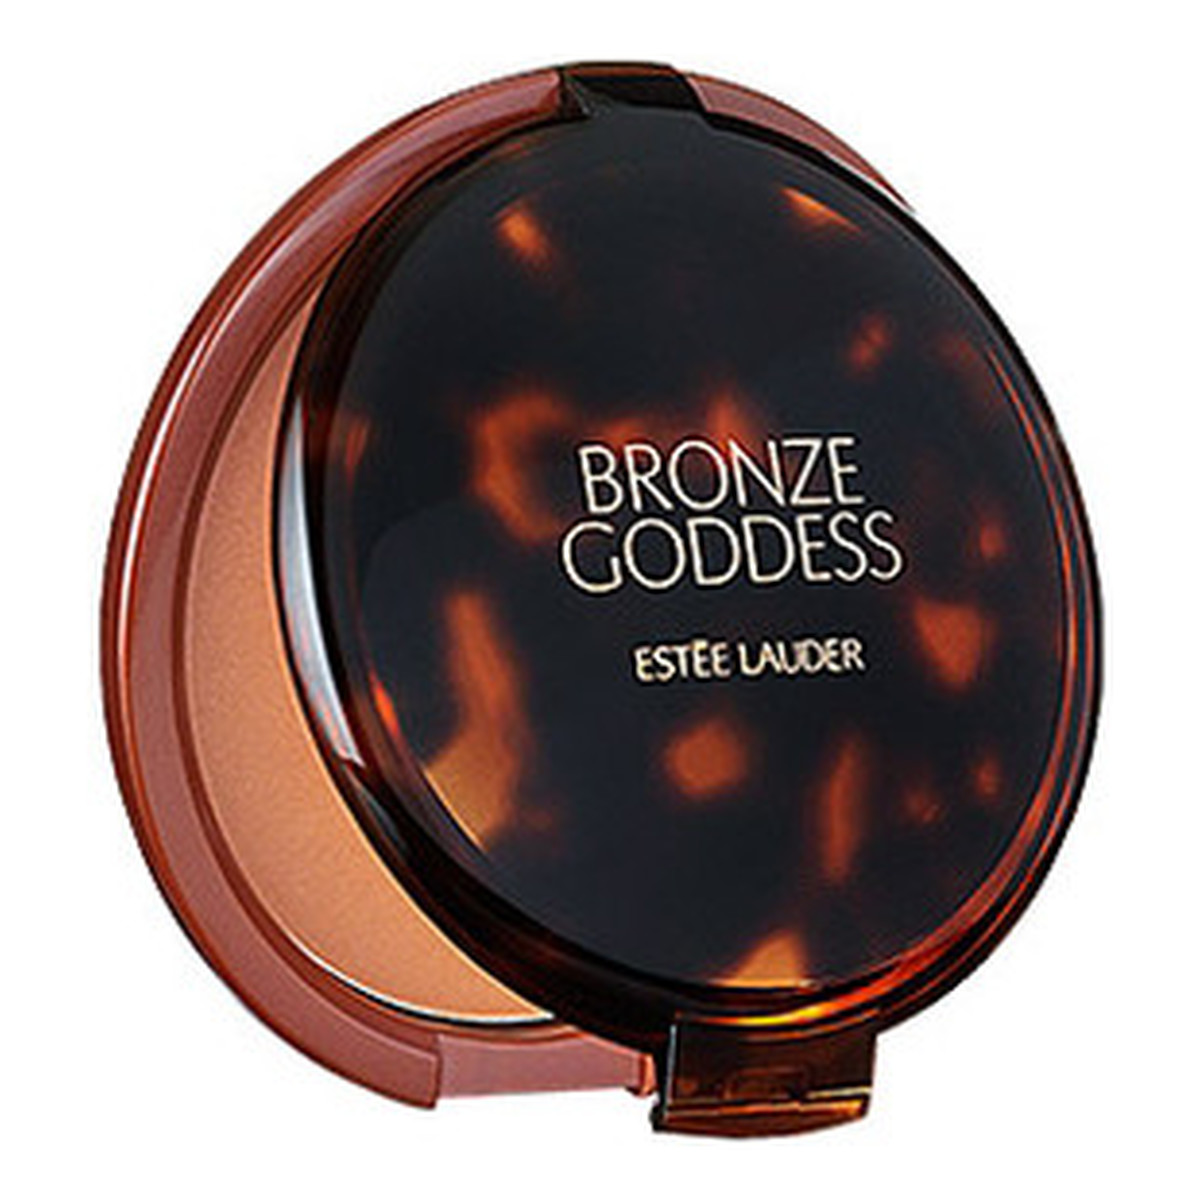 Estee Lauder Bronze Goddess Powder Bronzer puder brązujący 21g